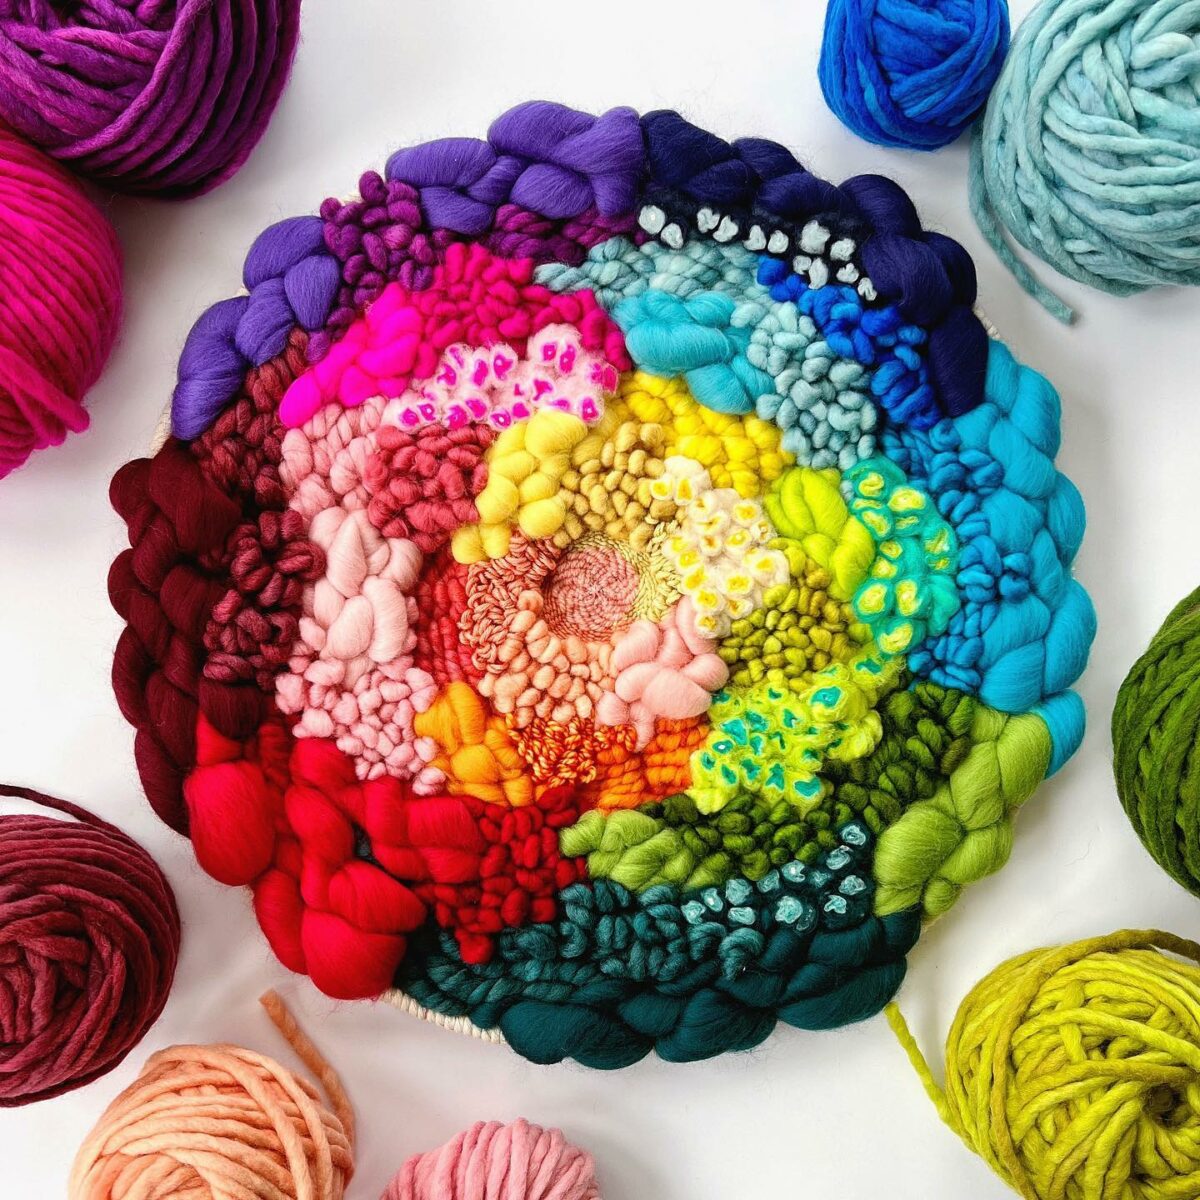 The exuberant textile art in vivid colors of Jen Duffin